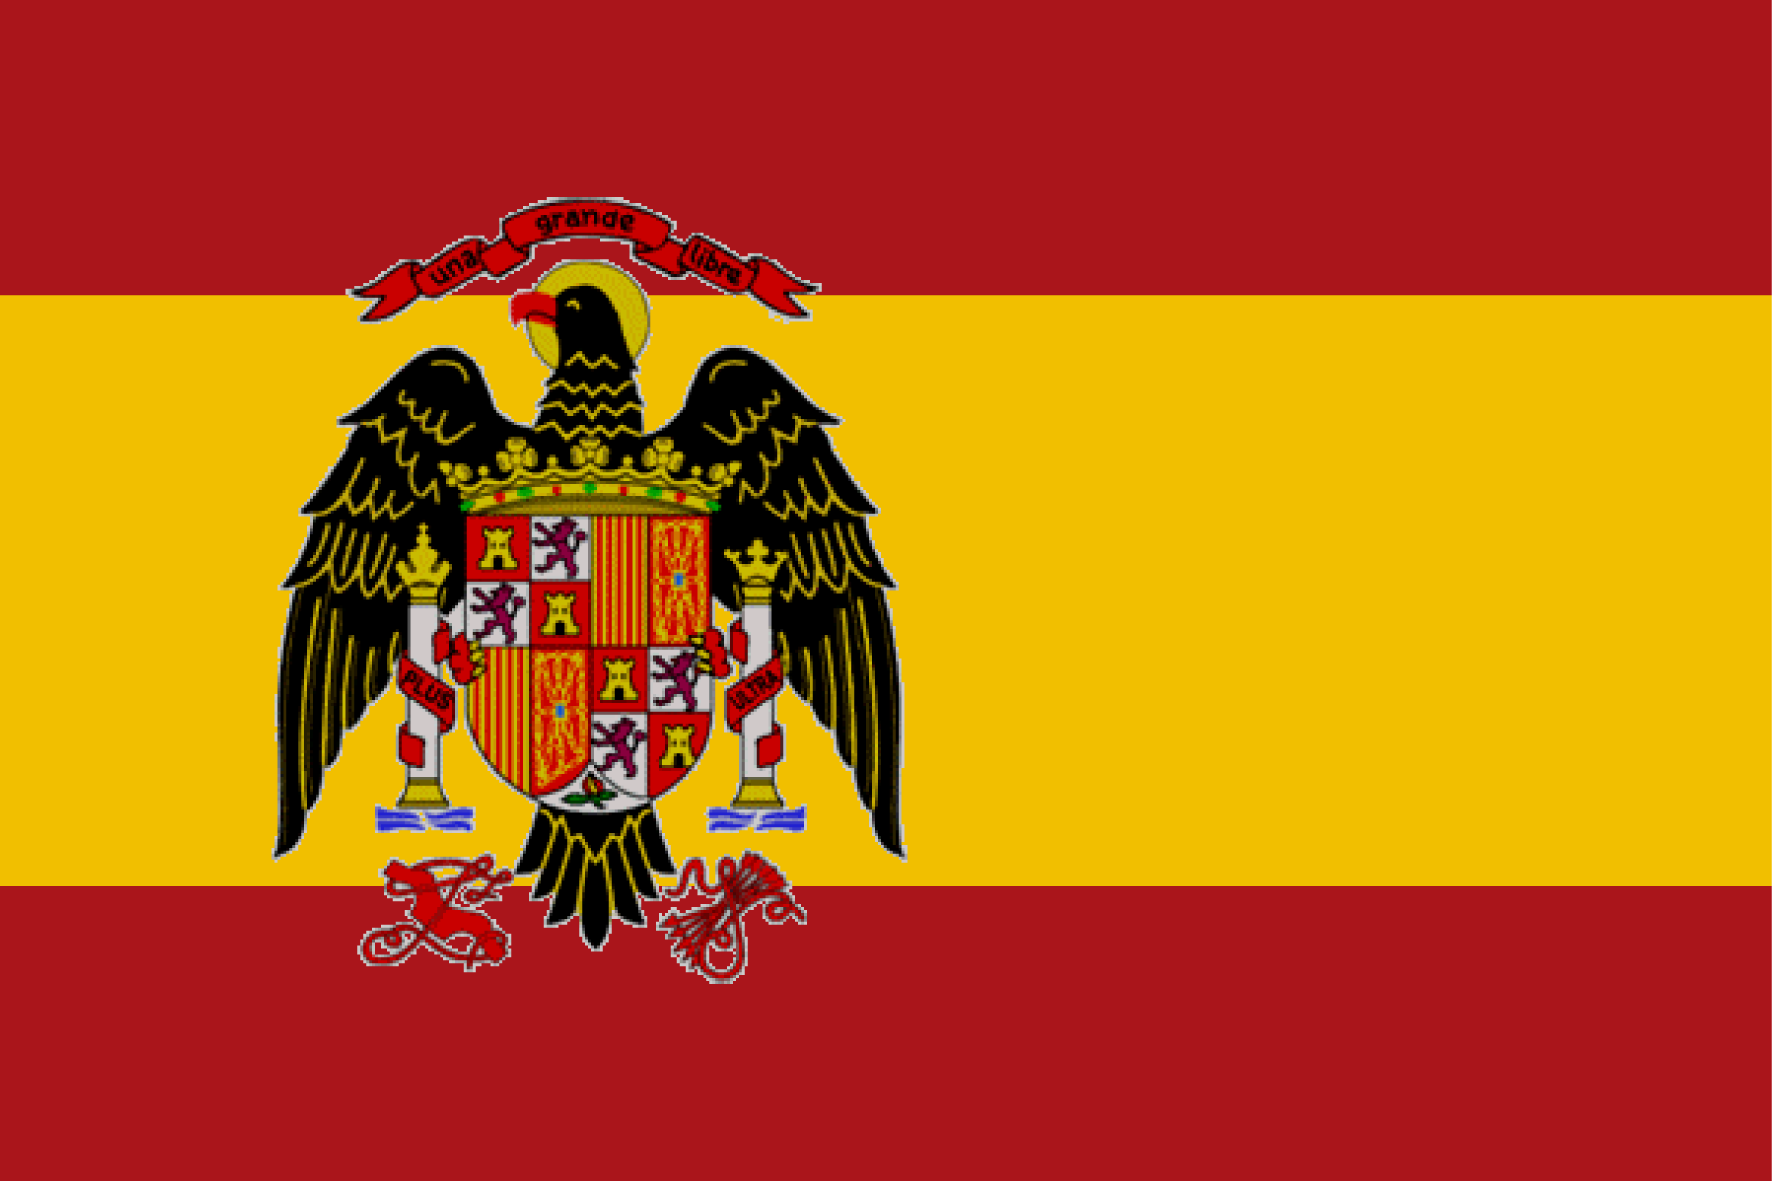 La original iniciativa de una tuitera para tapar una bandera franquista